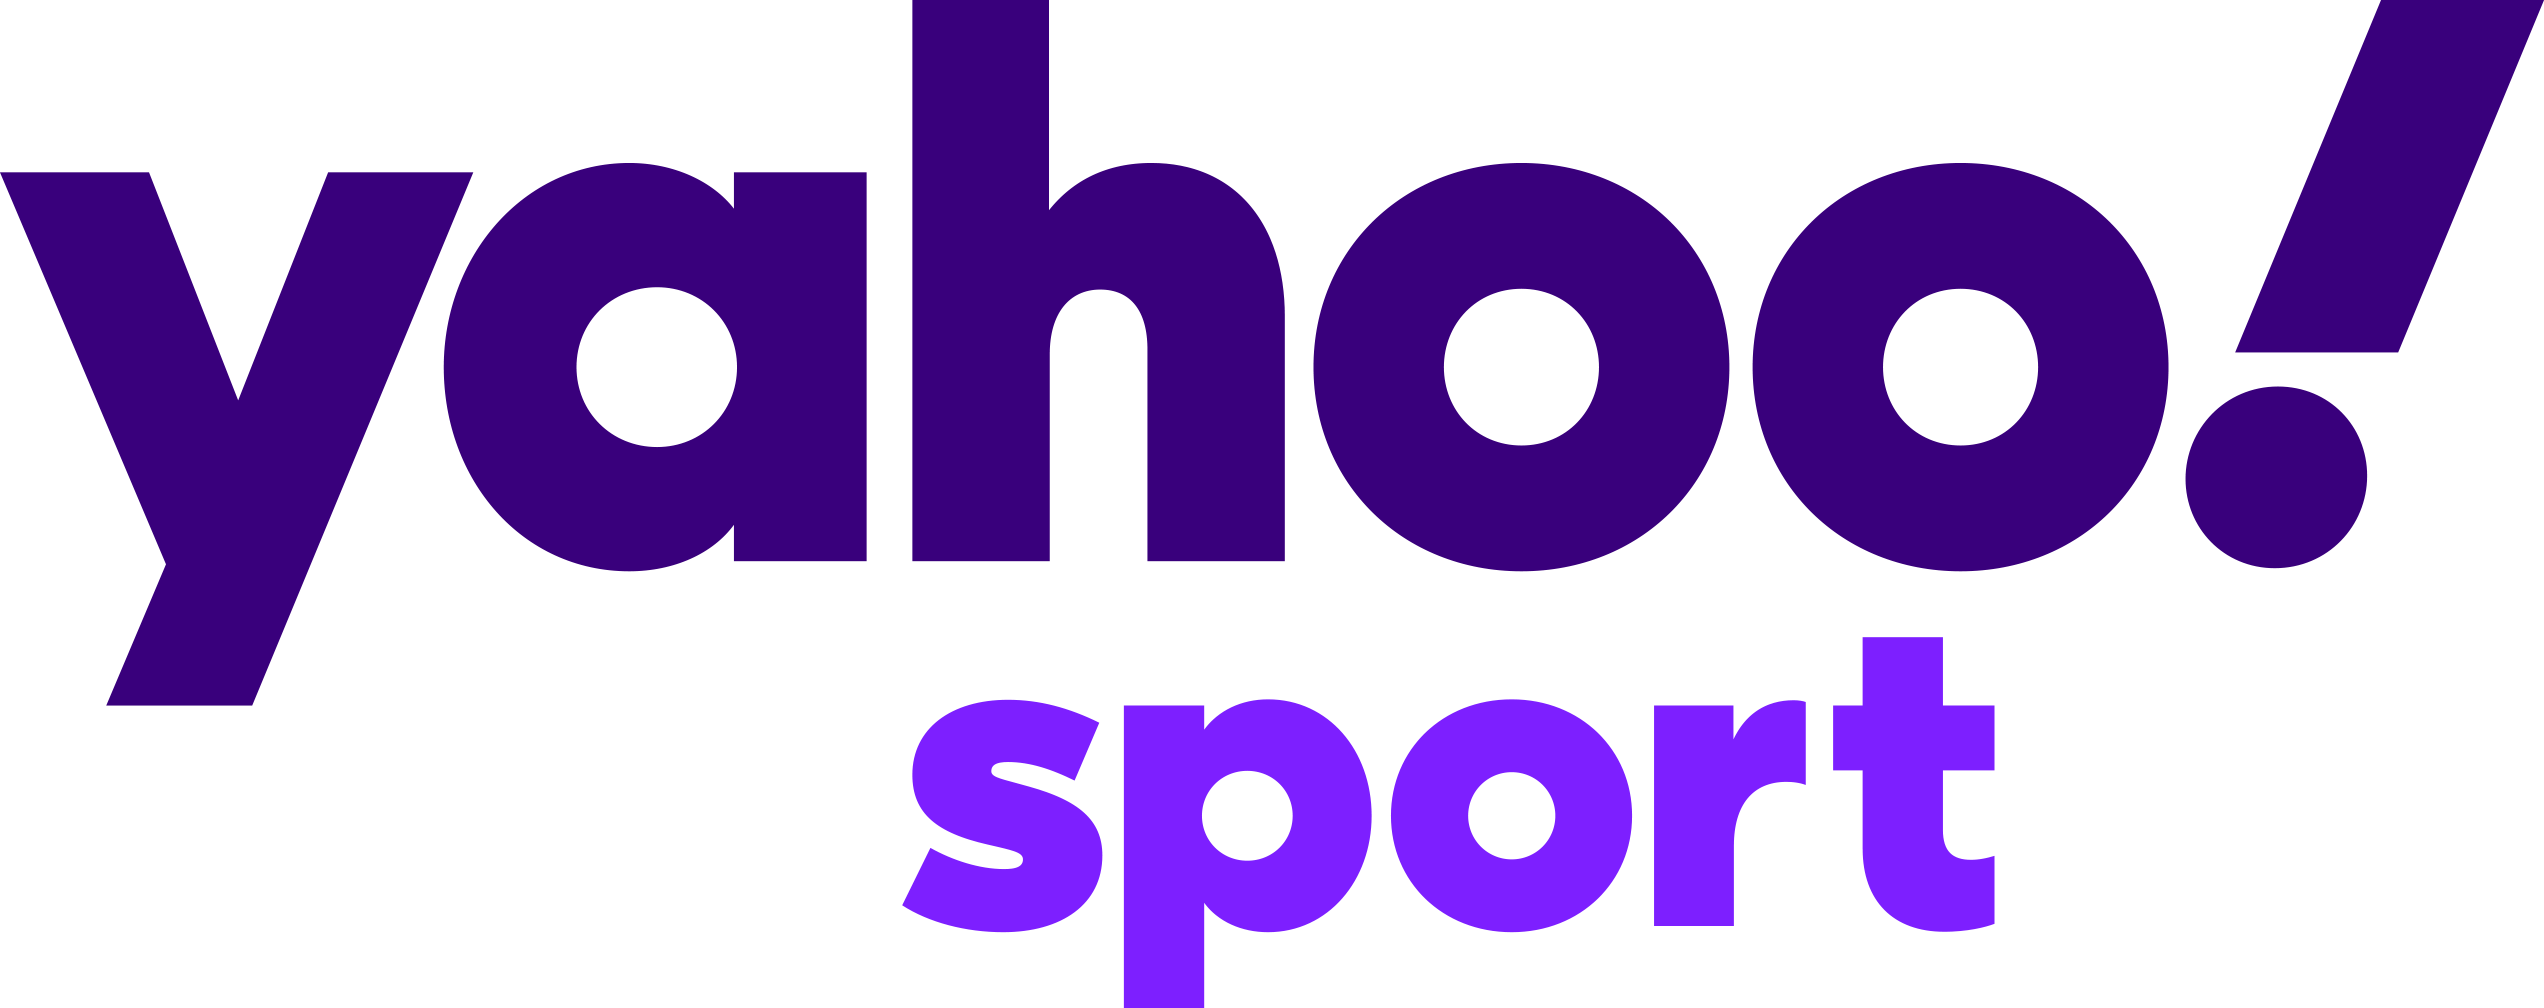 Scott fujita on Yahoo Sport